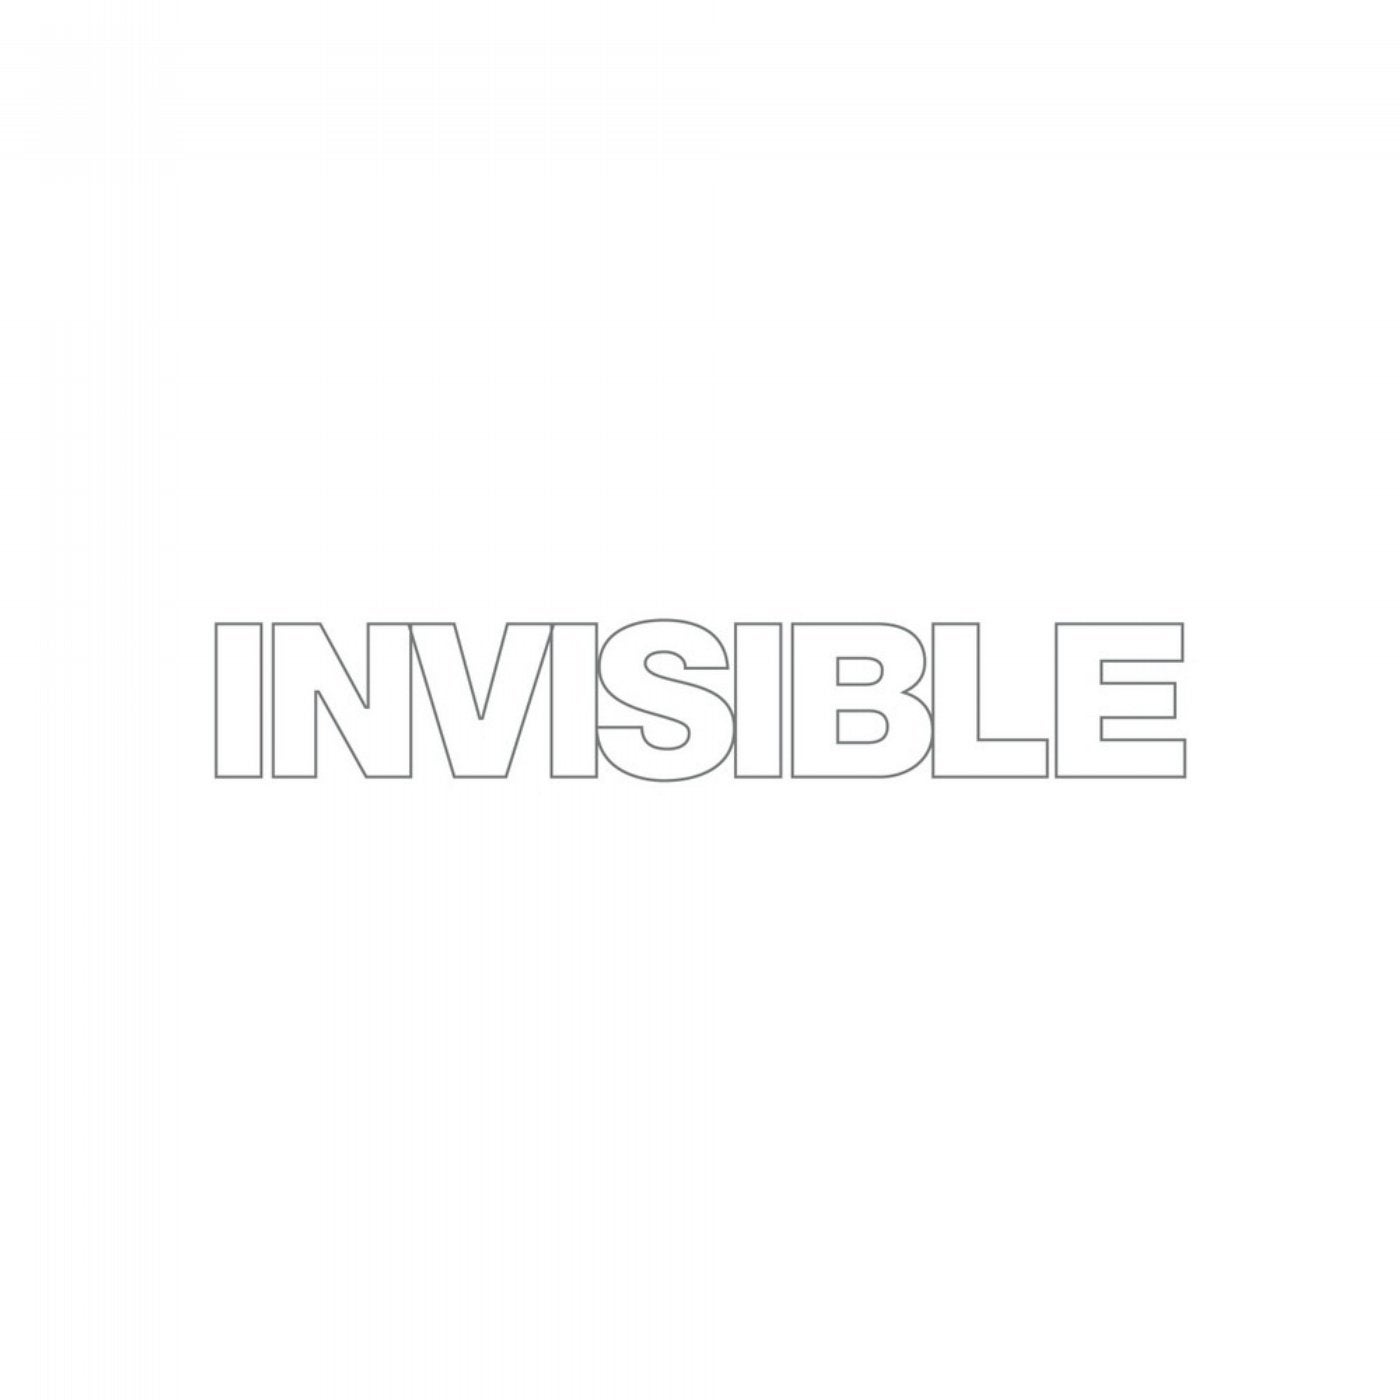 Invisible 012